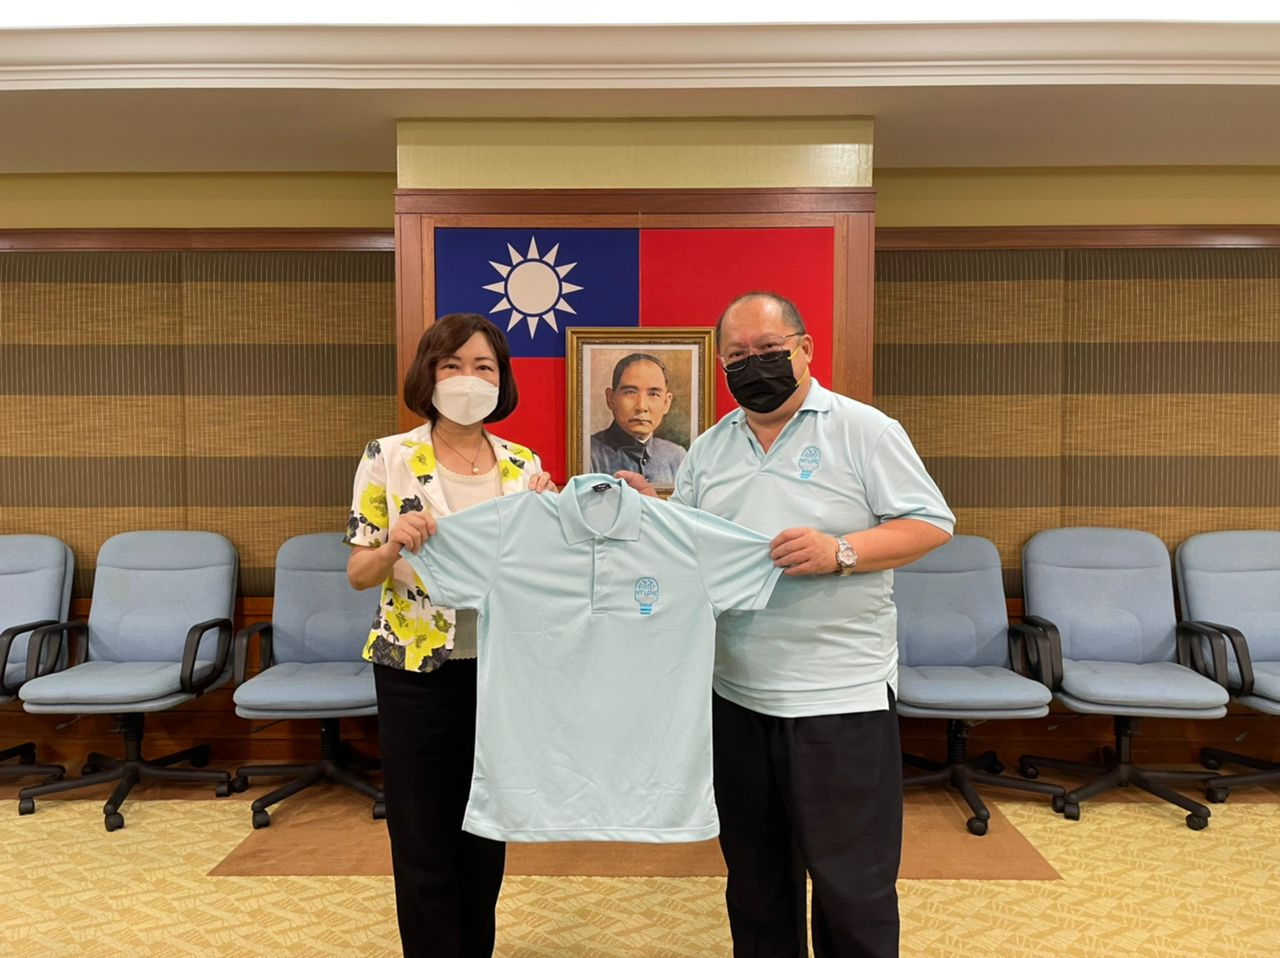 Persatuan Siswazah-Siswazah Universiti Kebangsaan Taiwan, Malaysia menyampaikan pakaian peringatan kepada Wakil Anne Hung untuk pertandingan pengaturcaraan.

